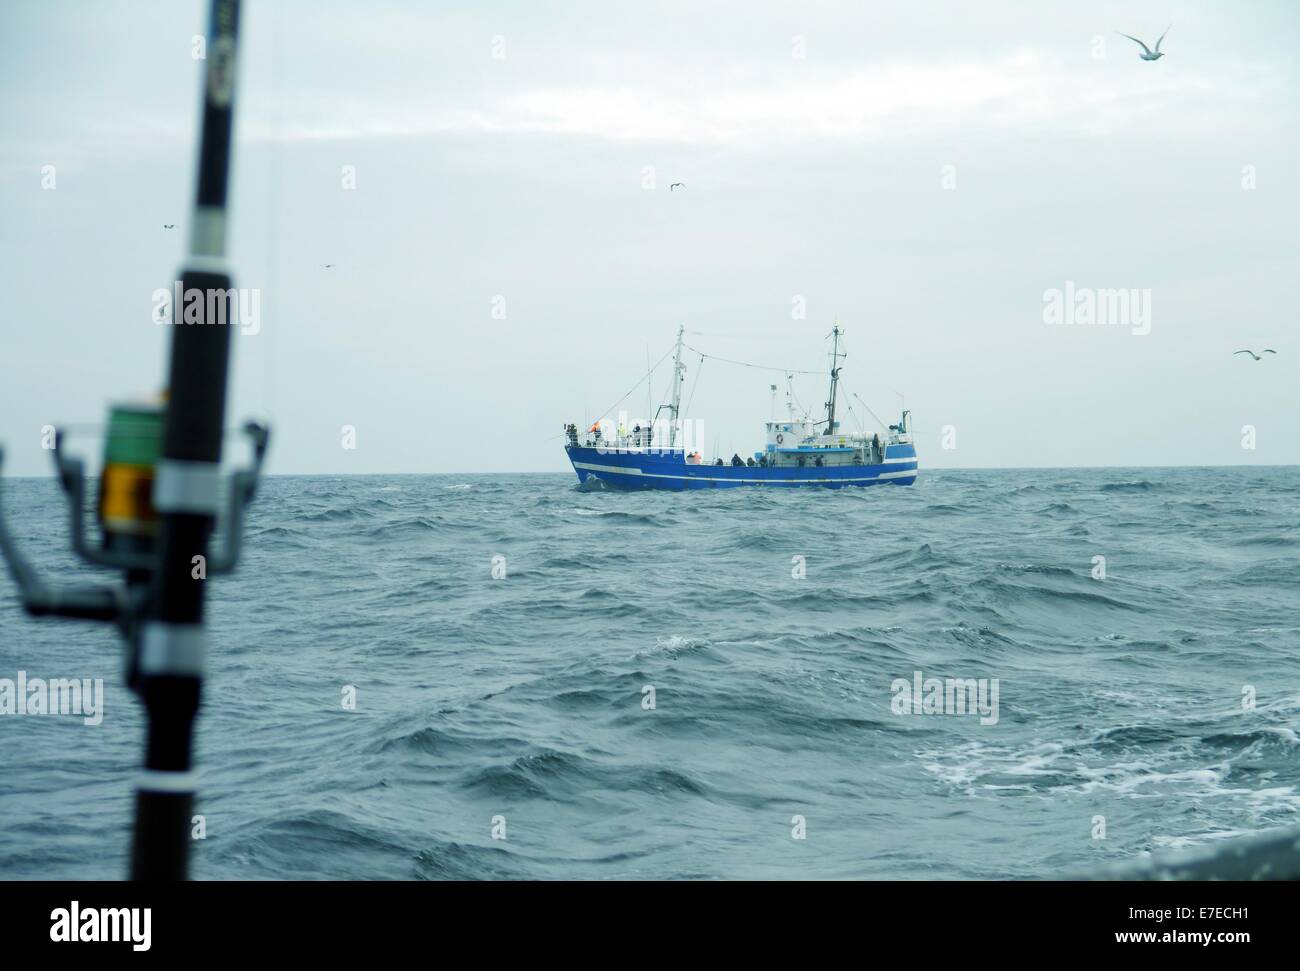 Canna da pesca a spinning-ruota su sfondo del mare Foto Stock